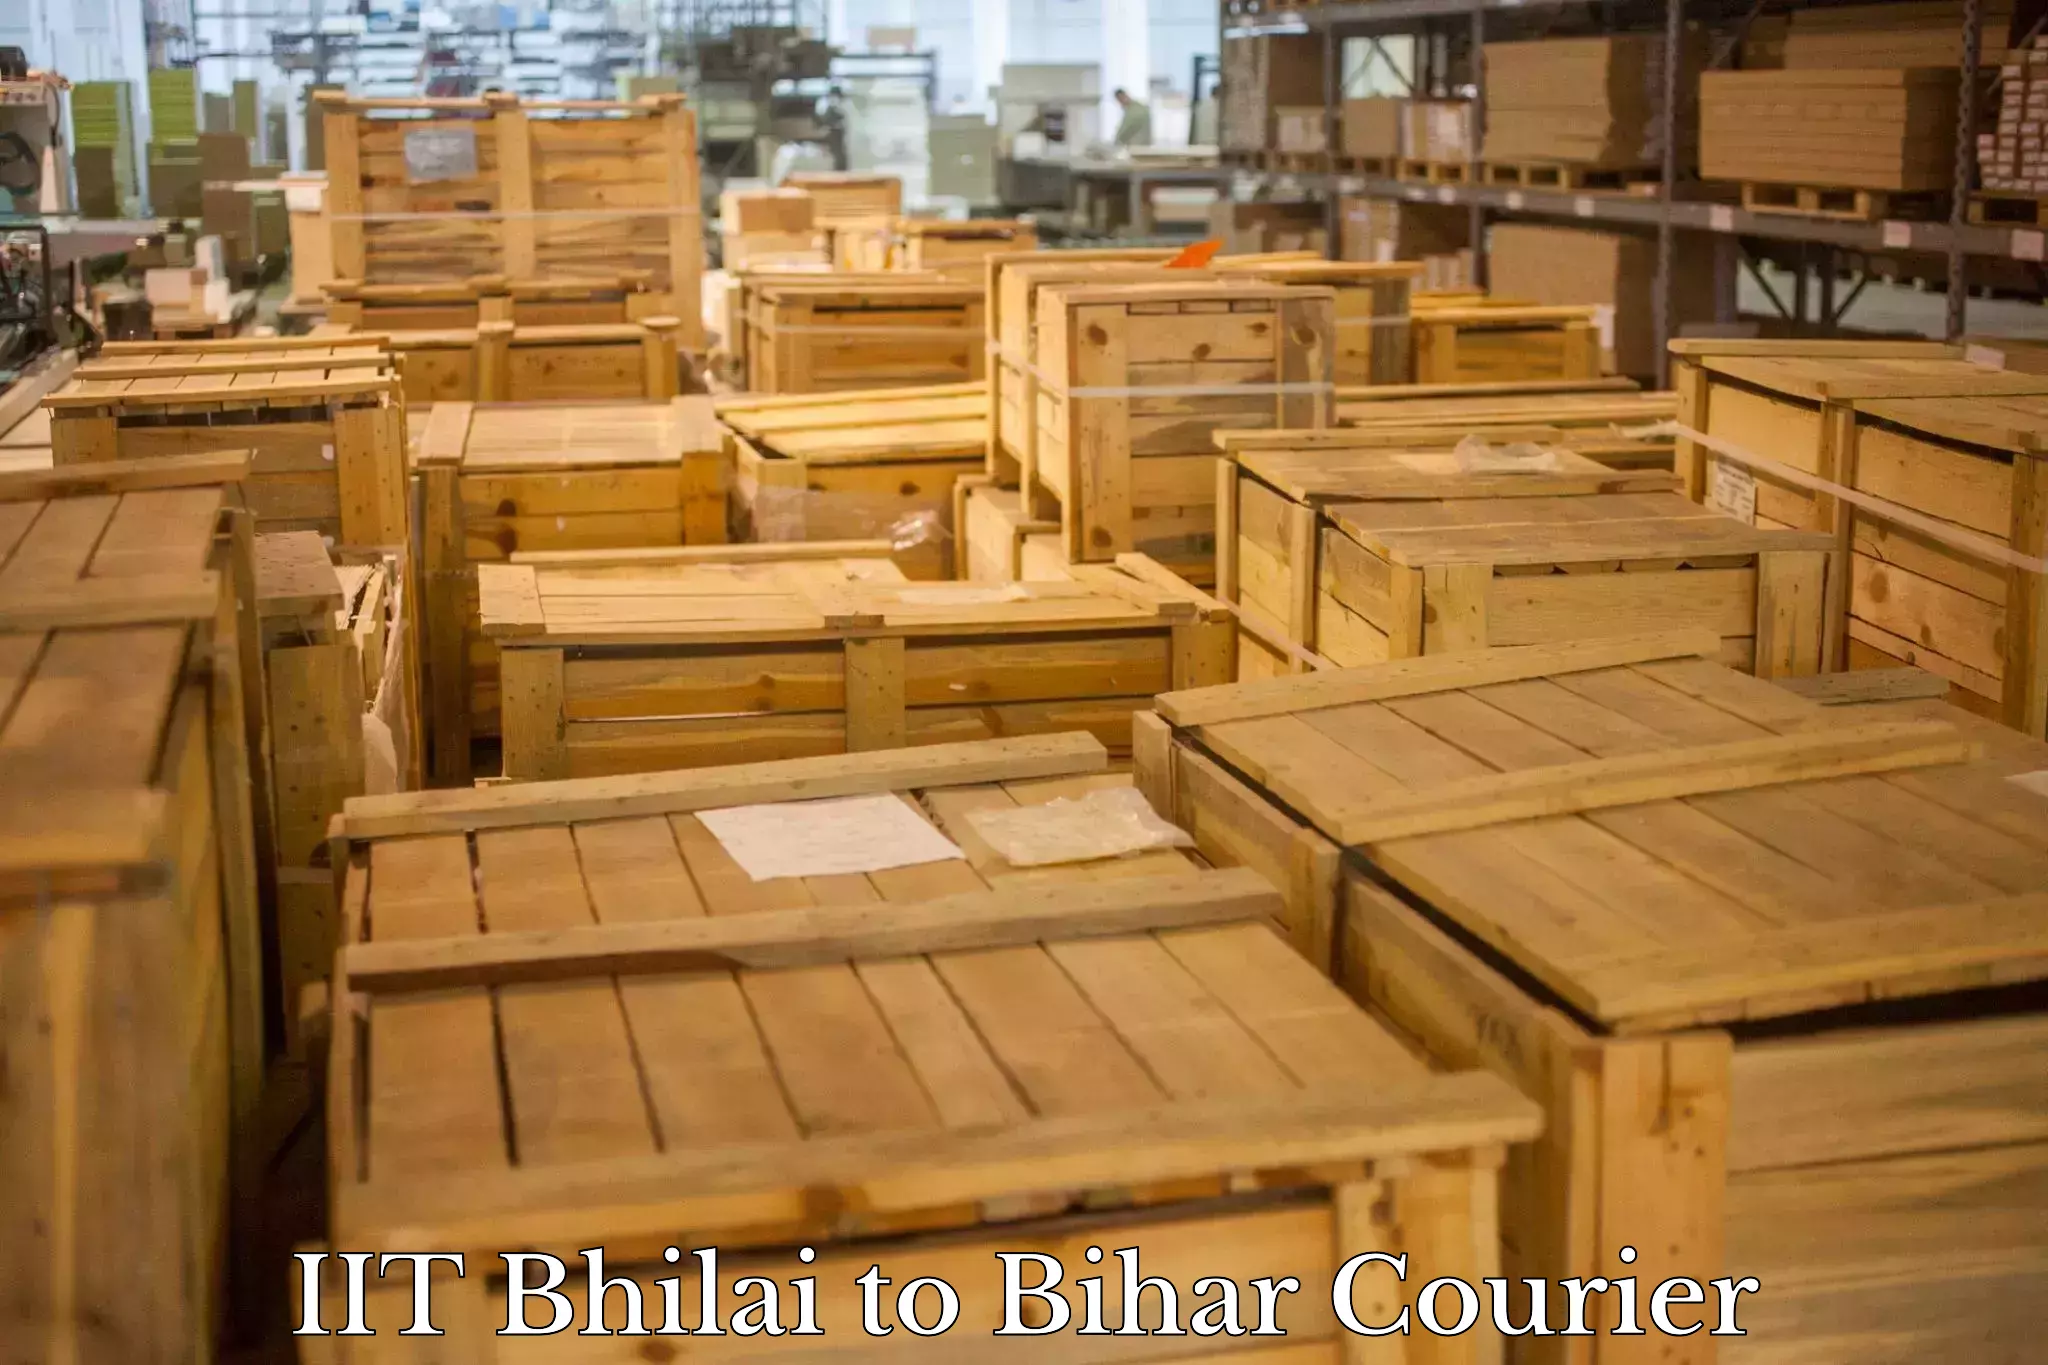 Express logistics service IIT Bhilai to Bihar